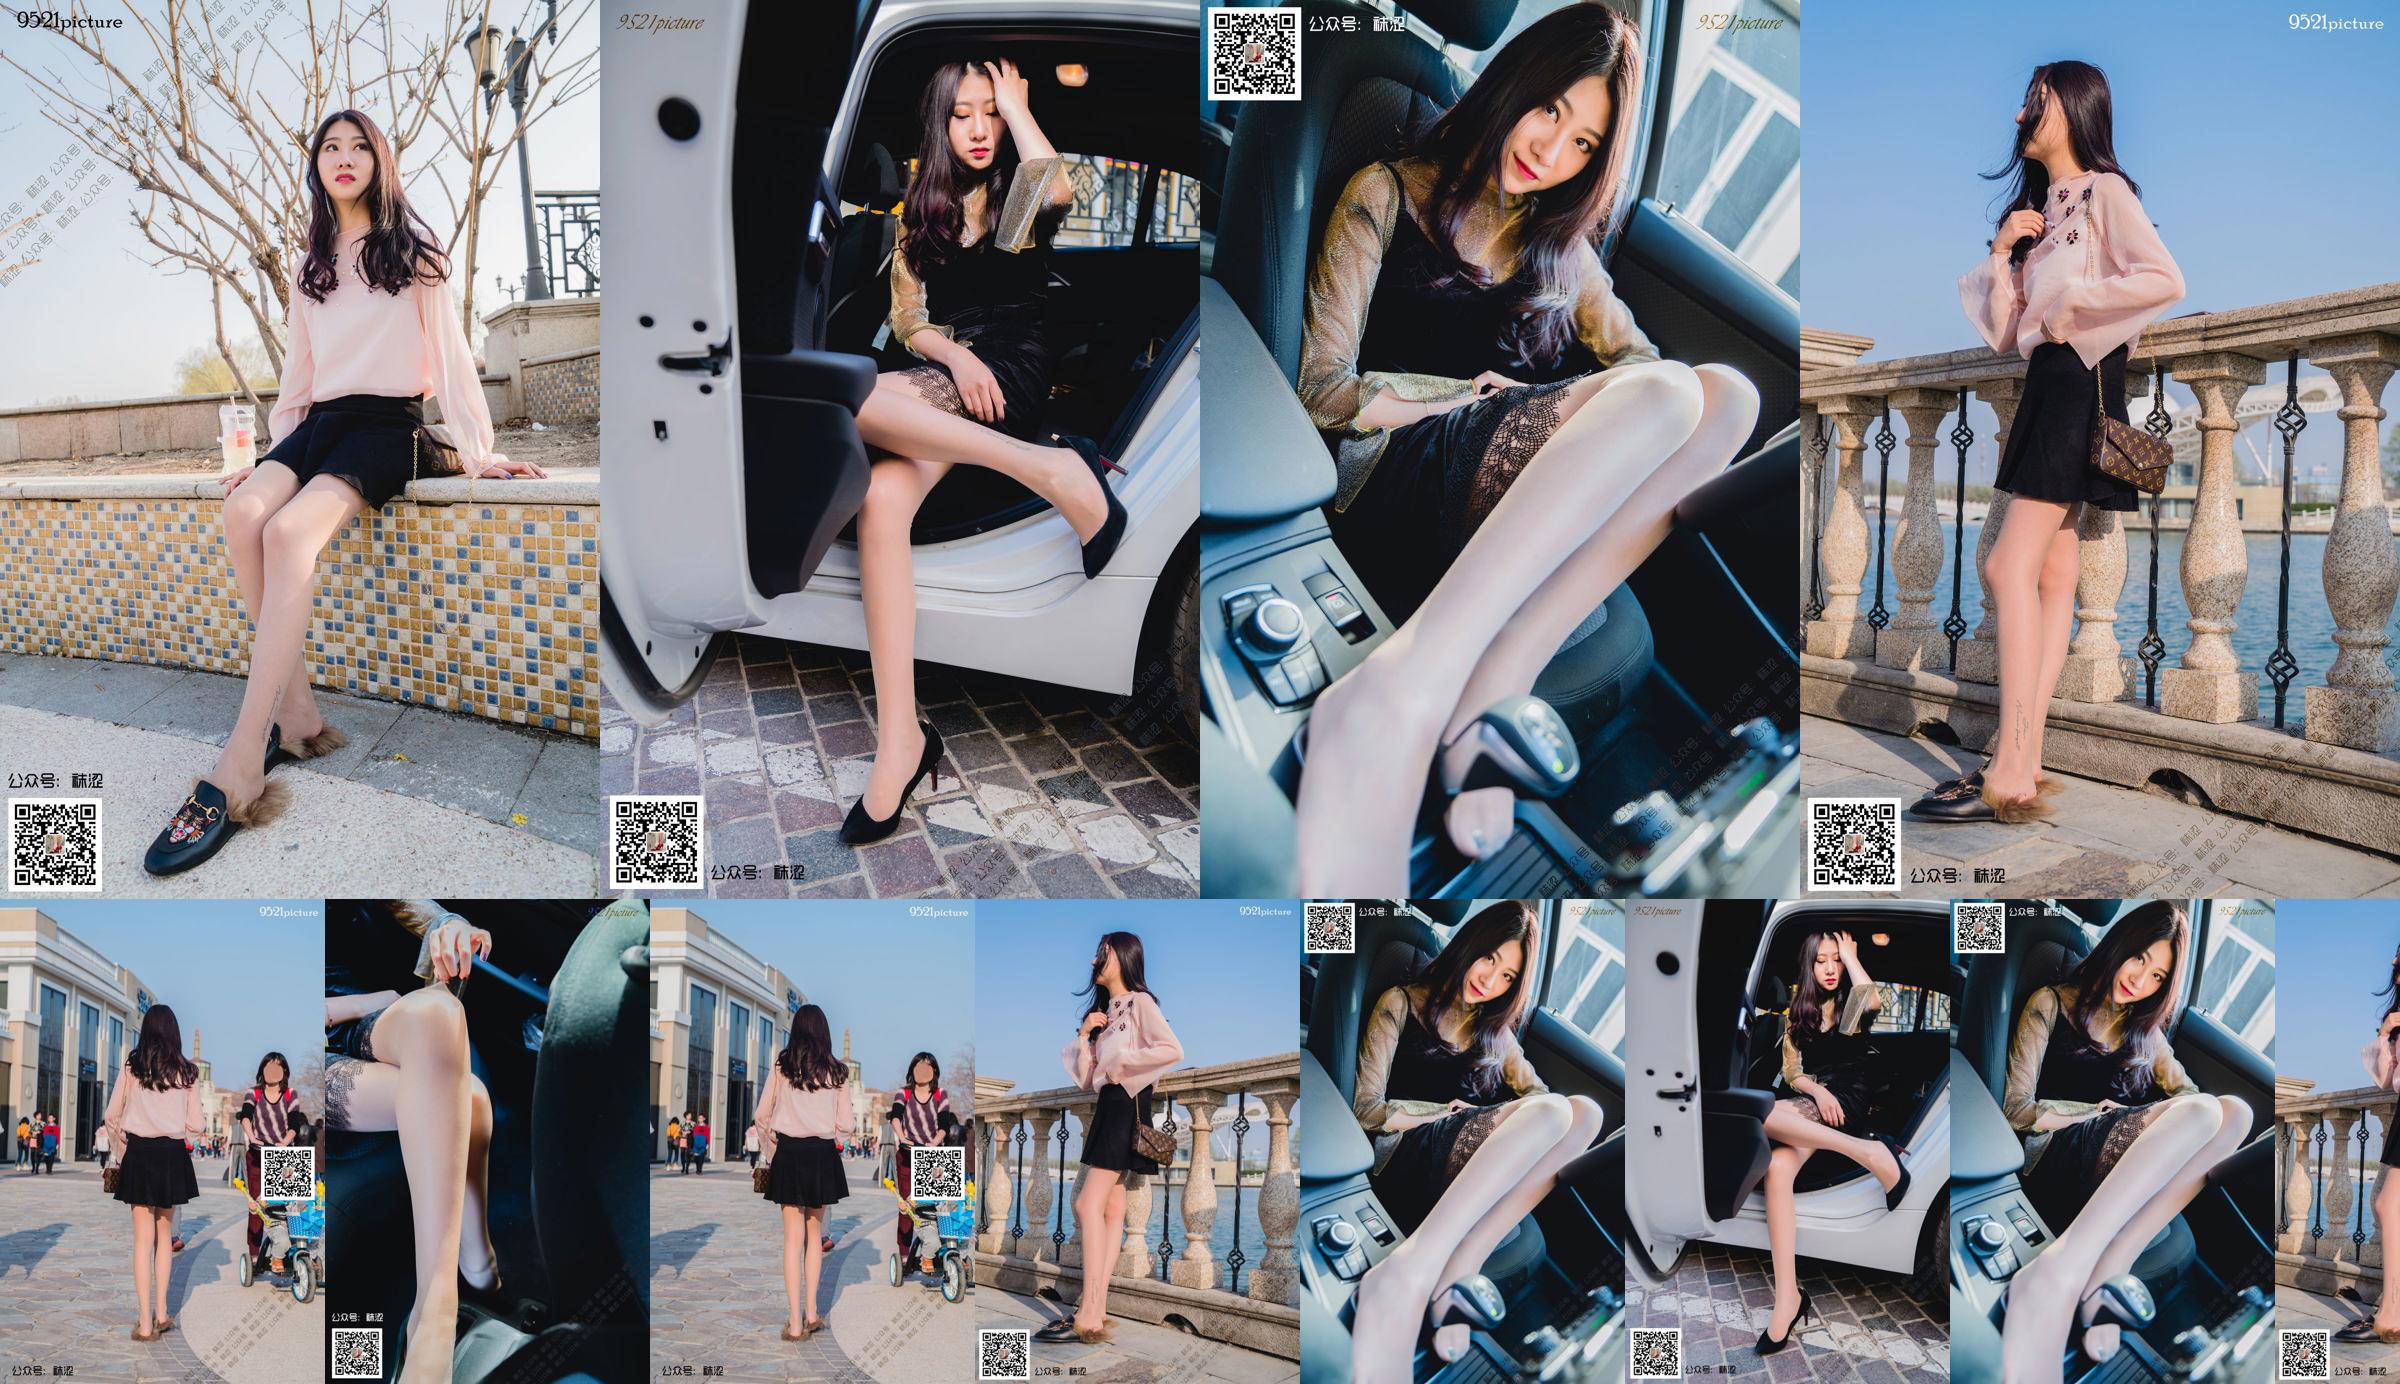 [Socks] VOL.031 Weiwei Black Mini Skirt No.9db4cd Page 1